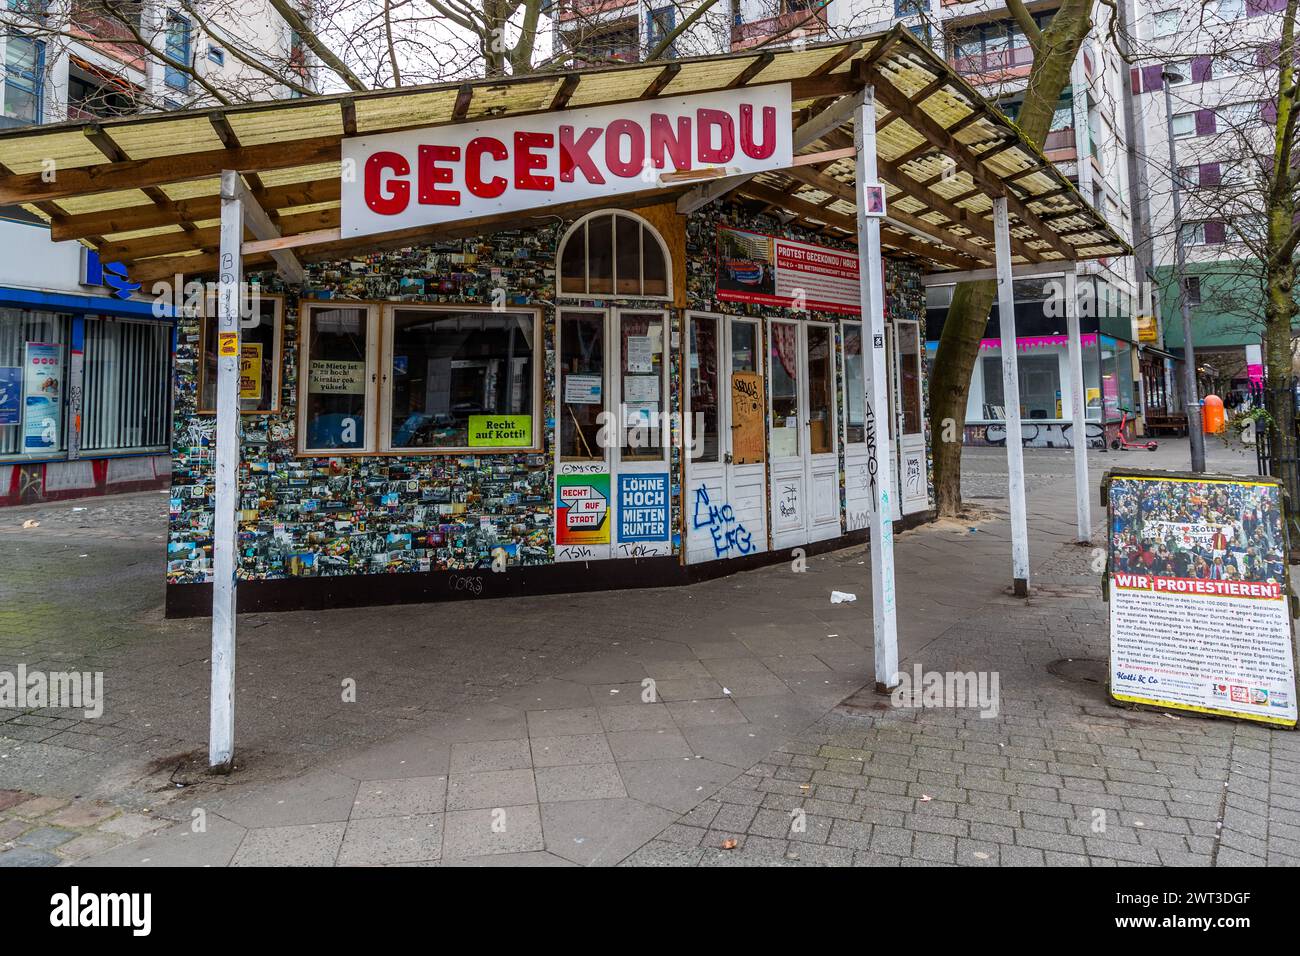 Gecekondu kiosk at Kottbusser Tor, Berlin, Germany. Gecekondu is an unplanned neighborhood in Turkey. Translated, it means 'put there overnight' Stock Photo